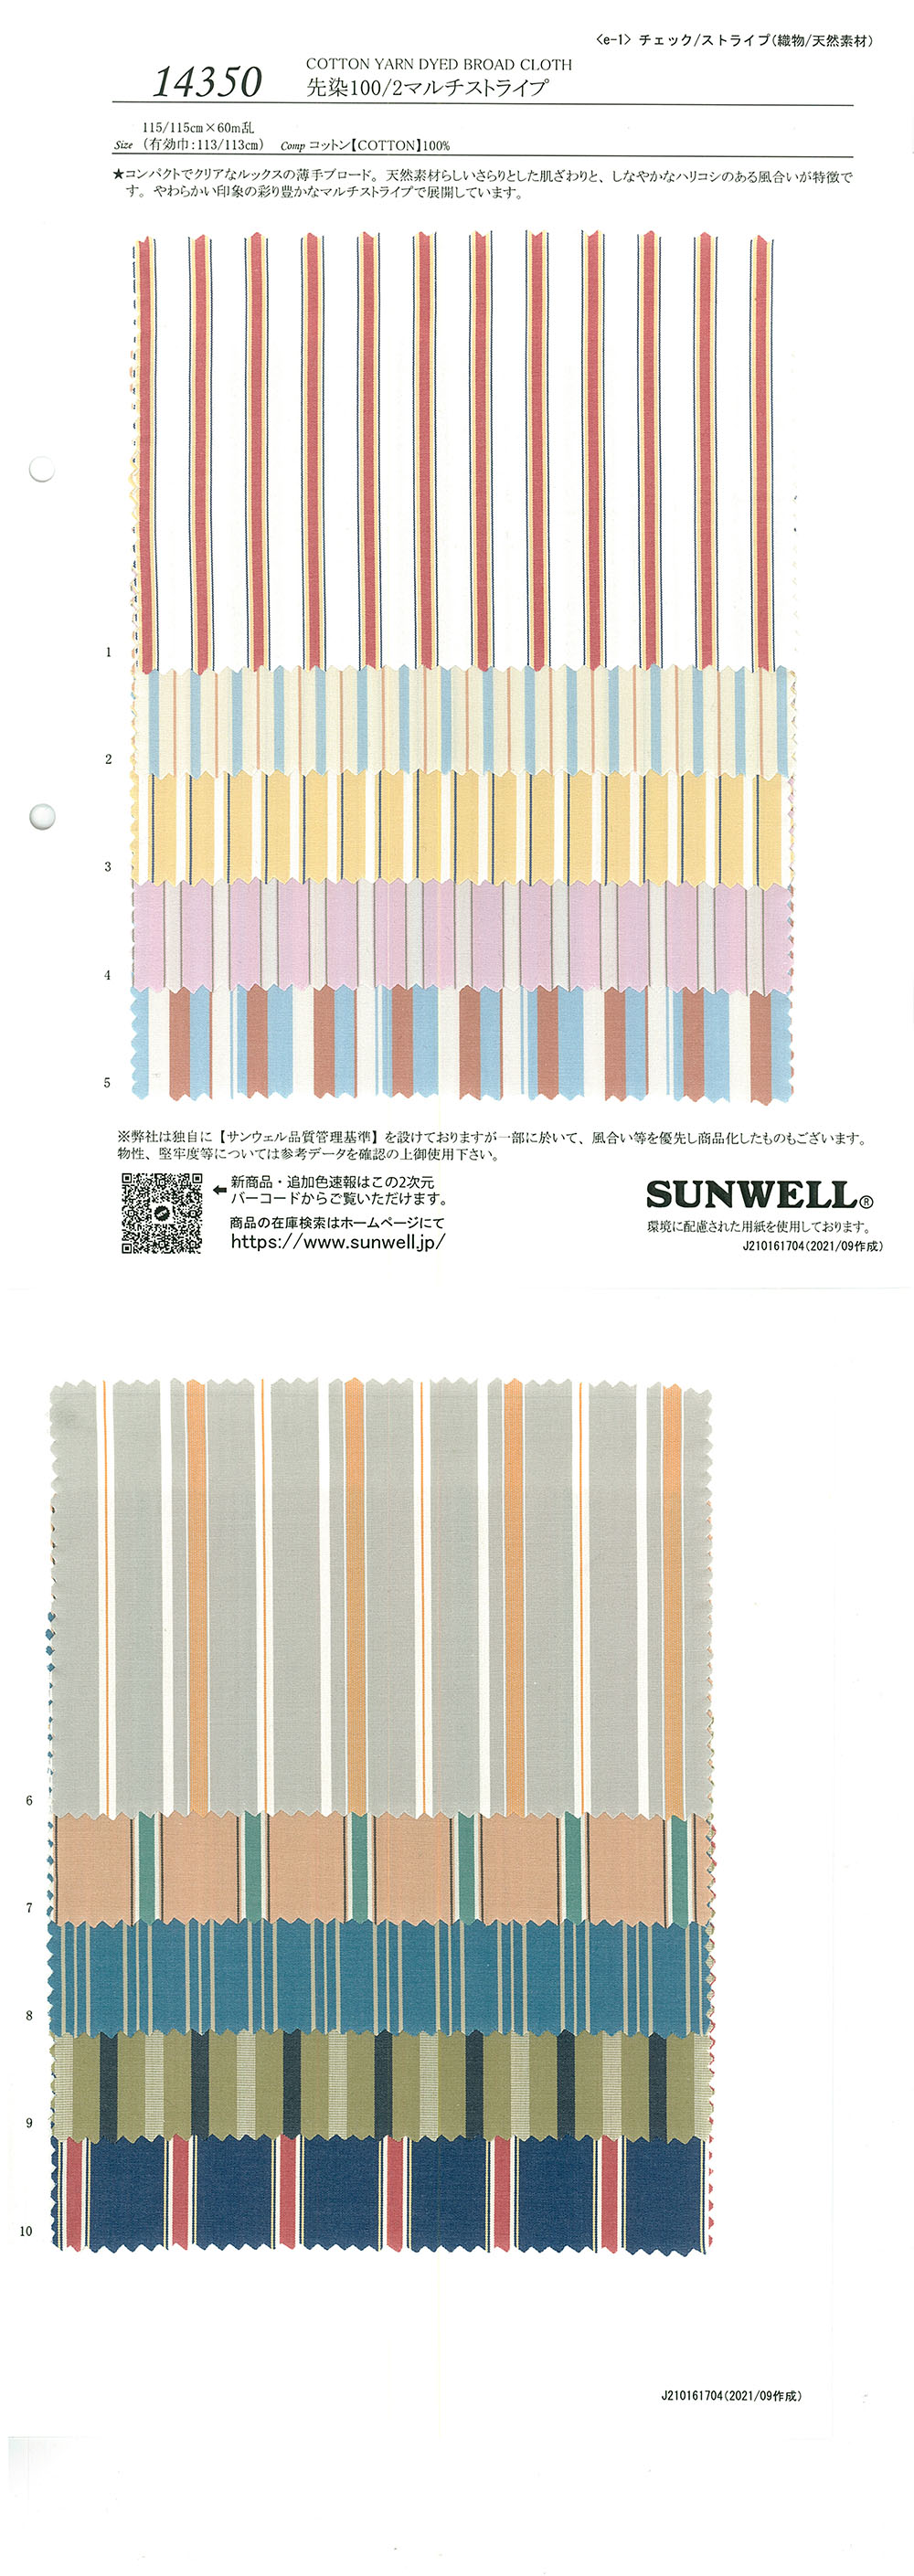 14350 色织100/2多条纹[面料] SUNWELL